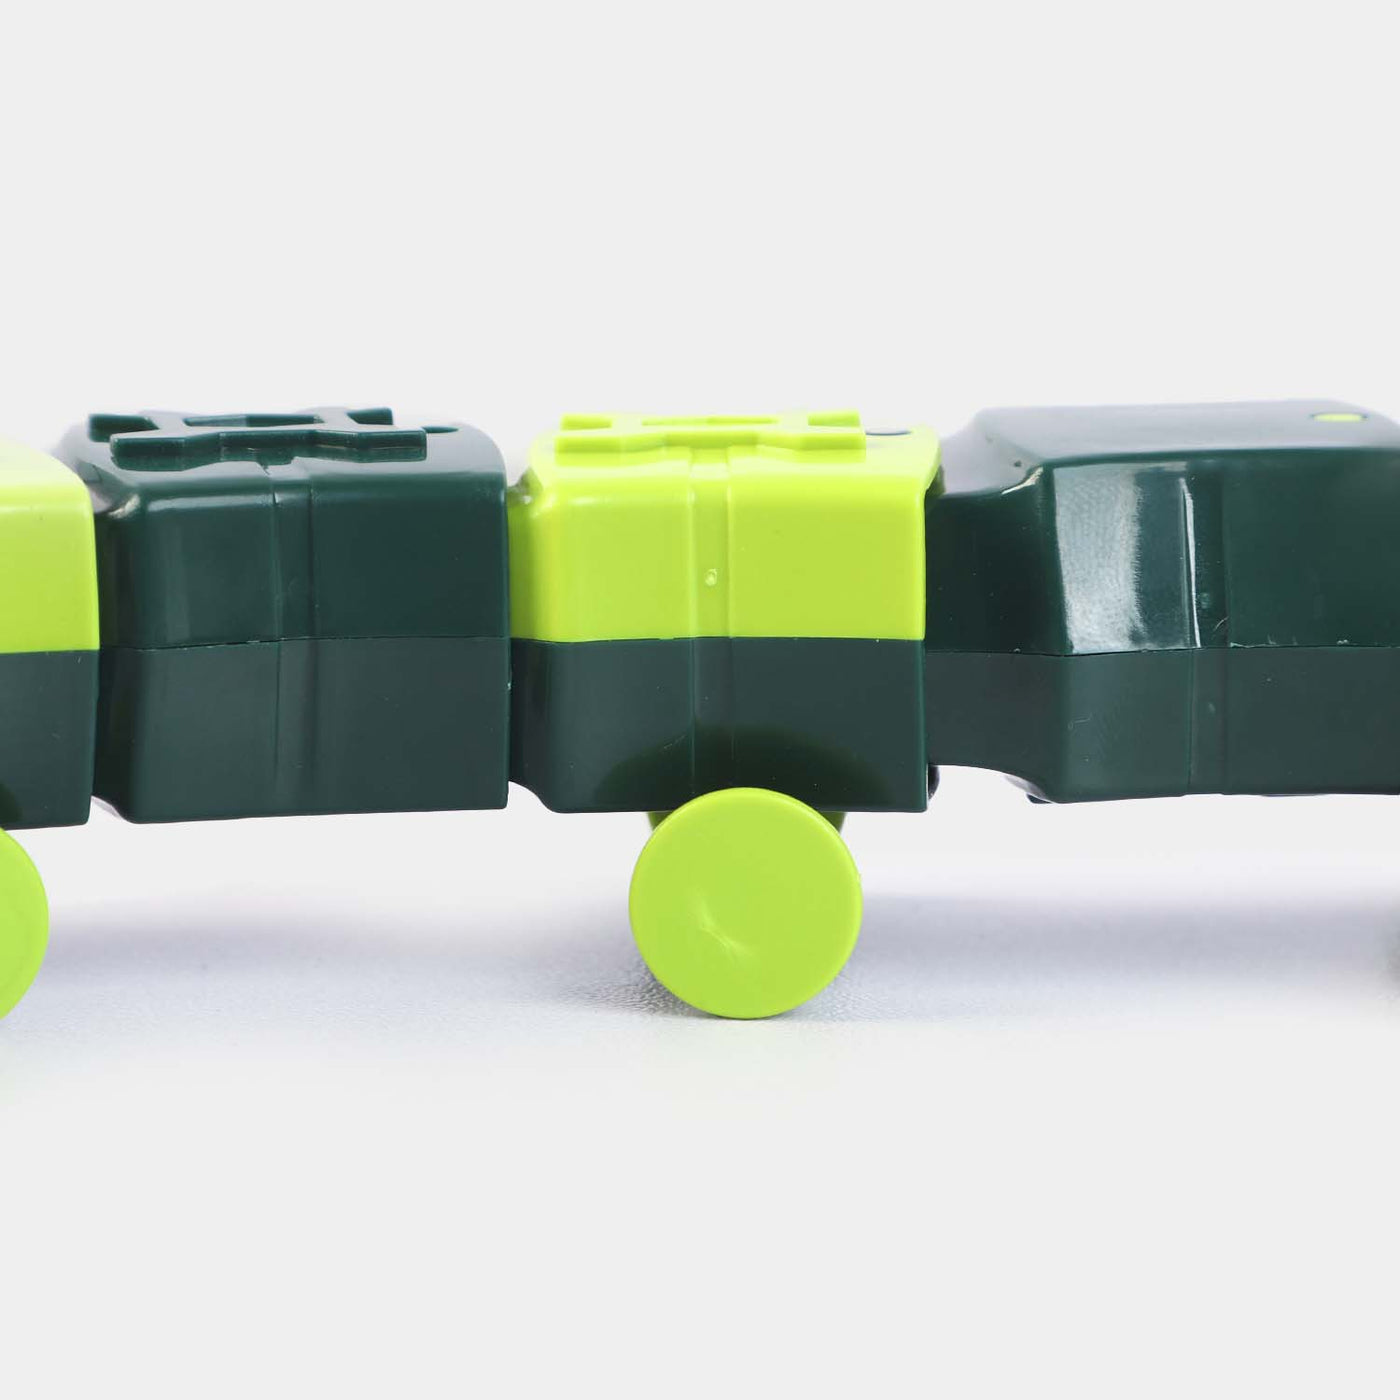 Assembled Slighter Bot/Snake Walking Toy For Kids